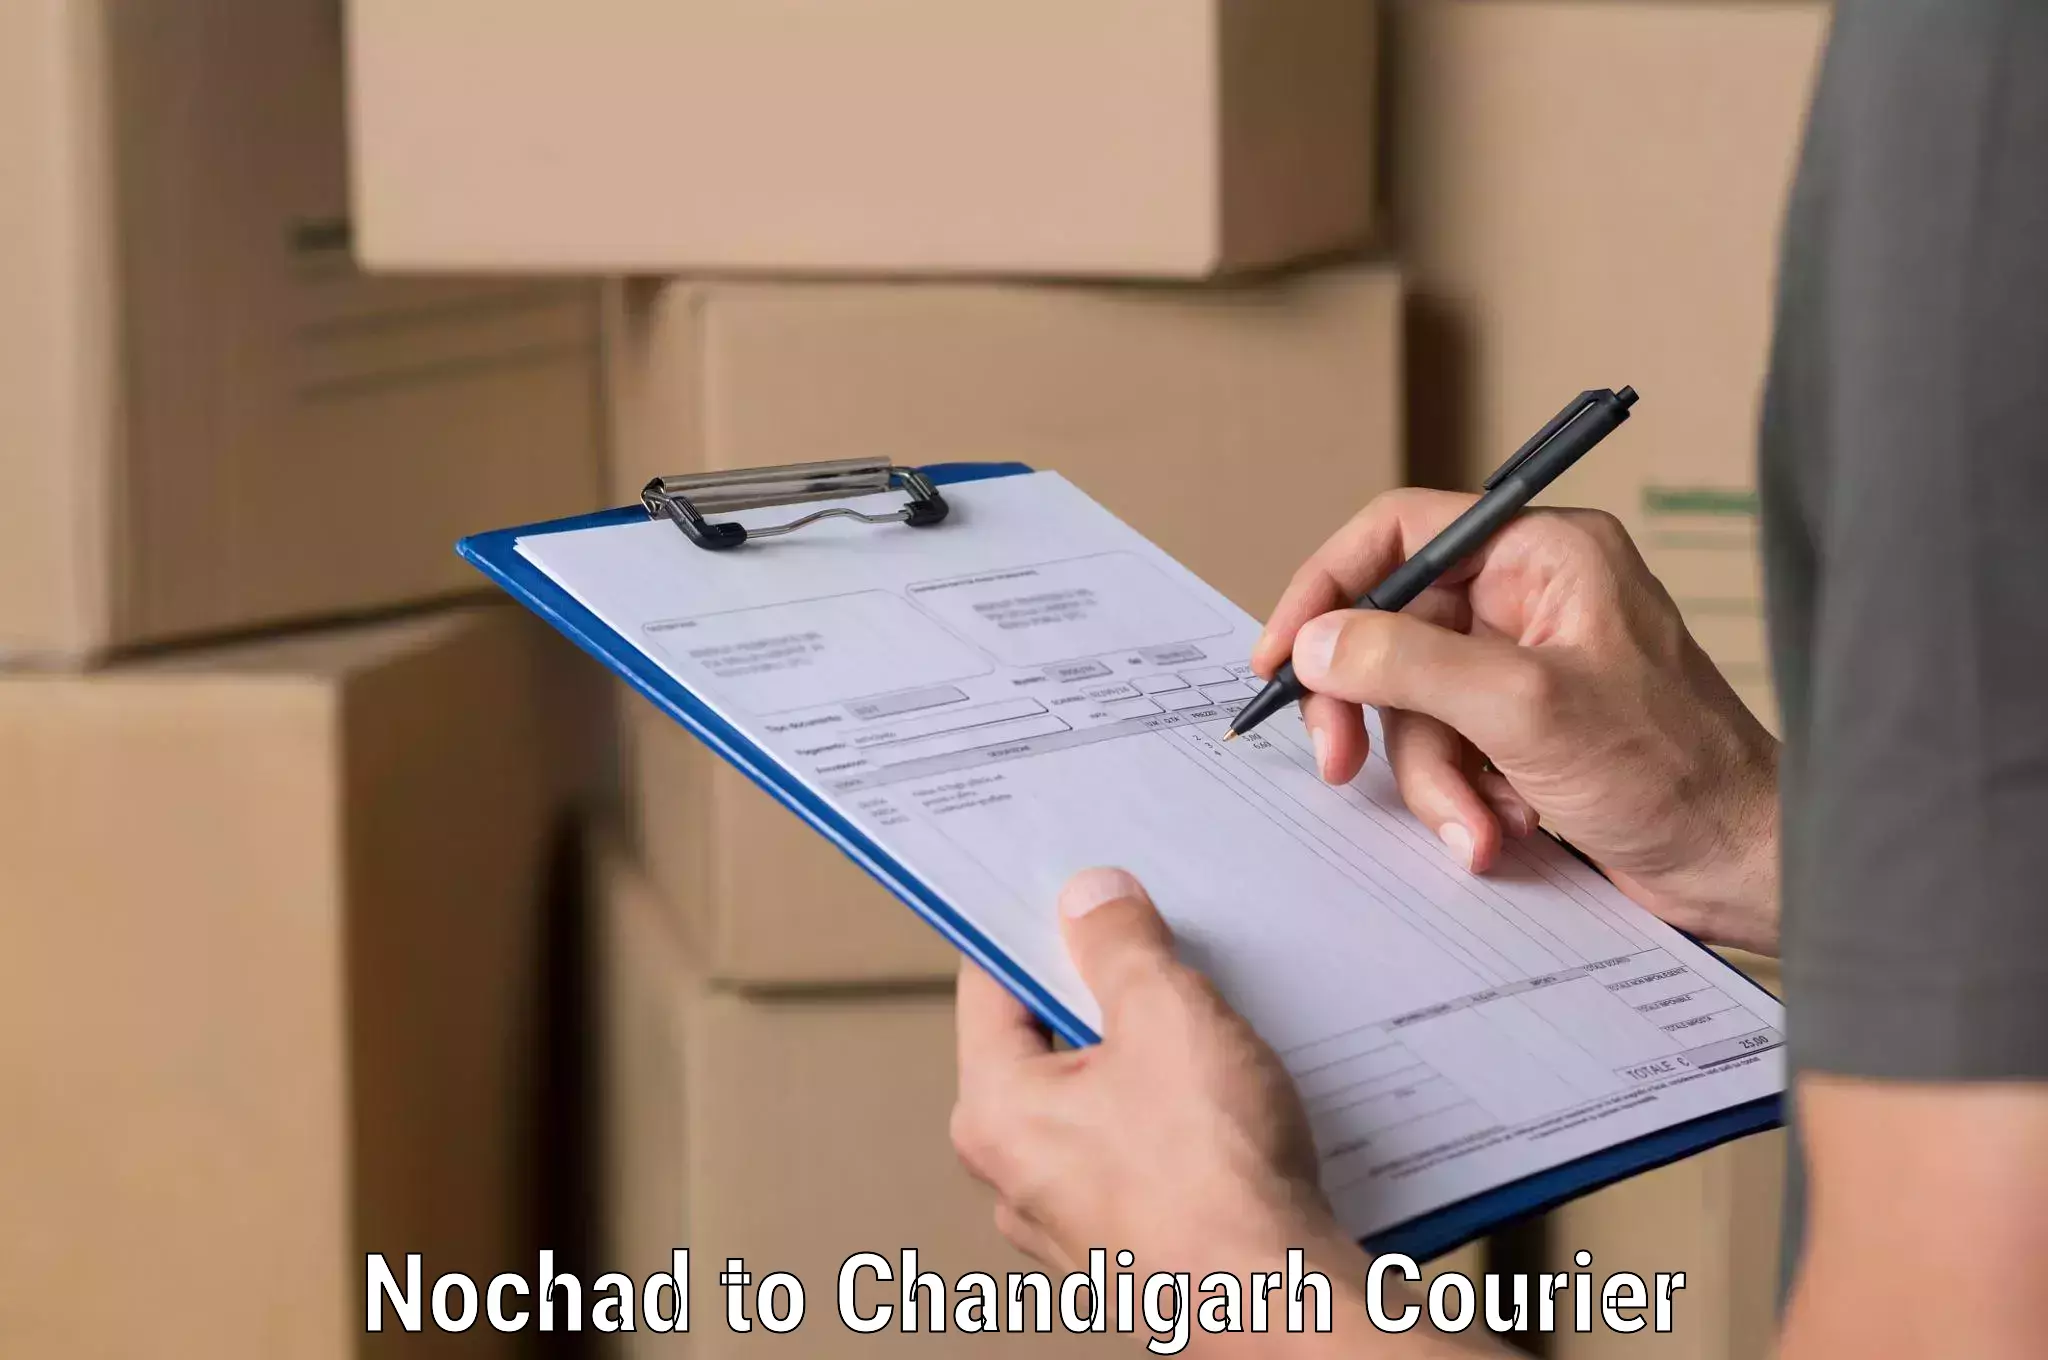 Courier app Nochad to Chandigarh